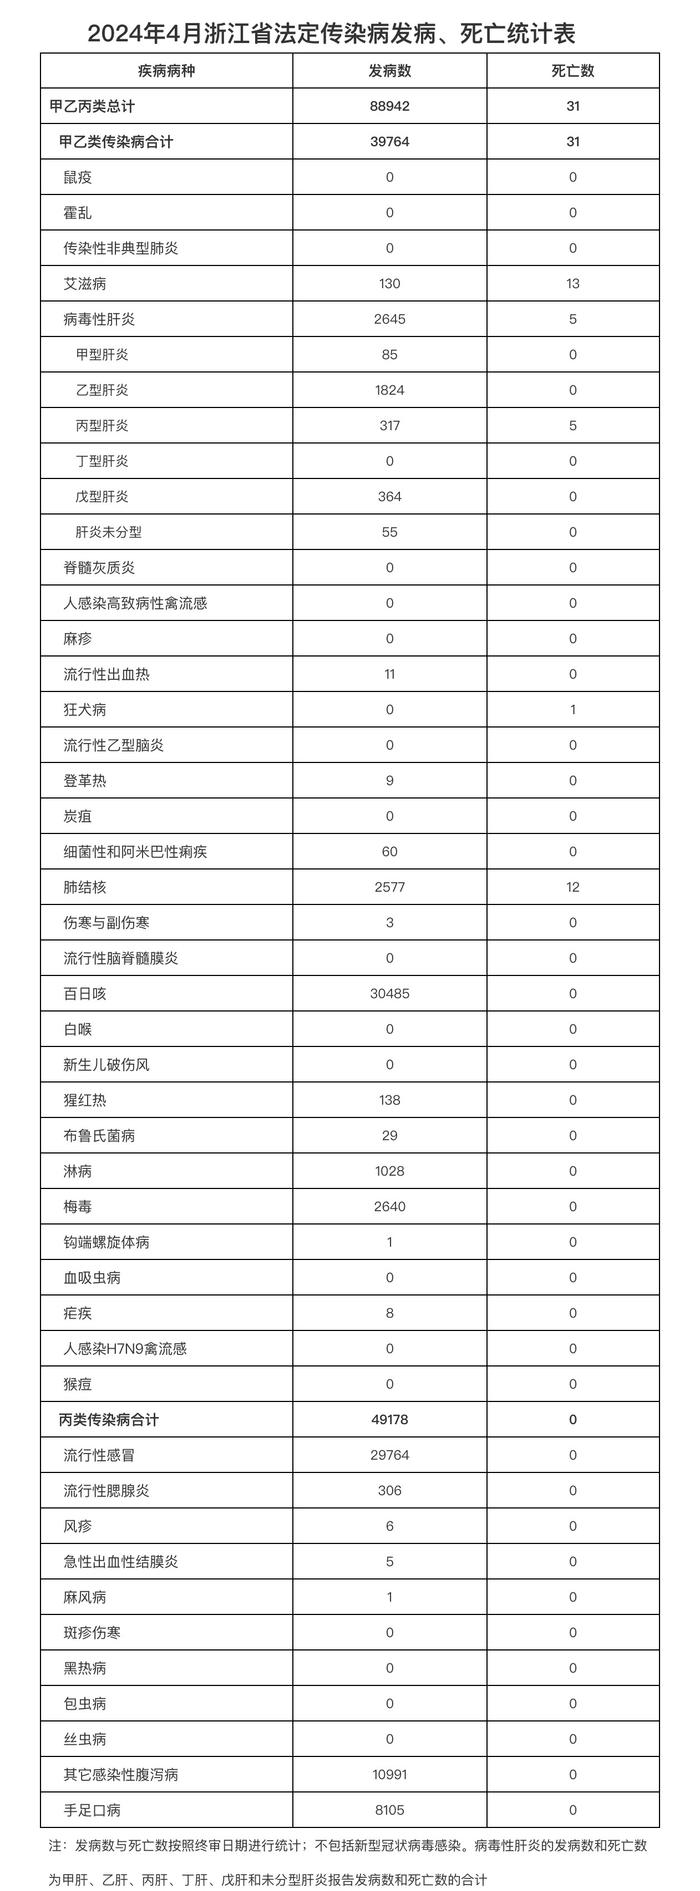 浙江省4月共报告法定传染病88942例，死亡31人